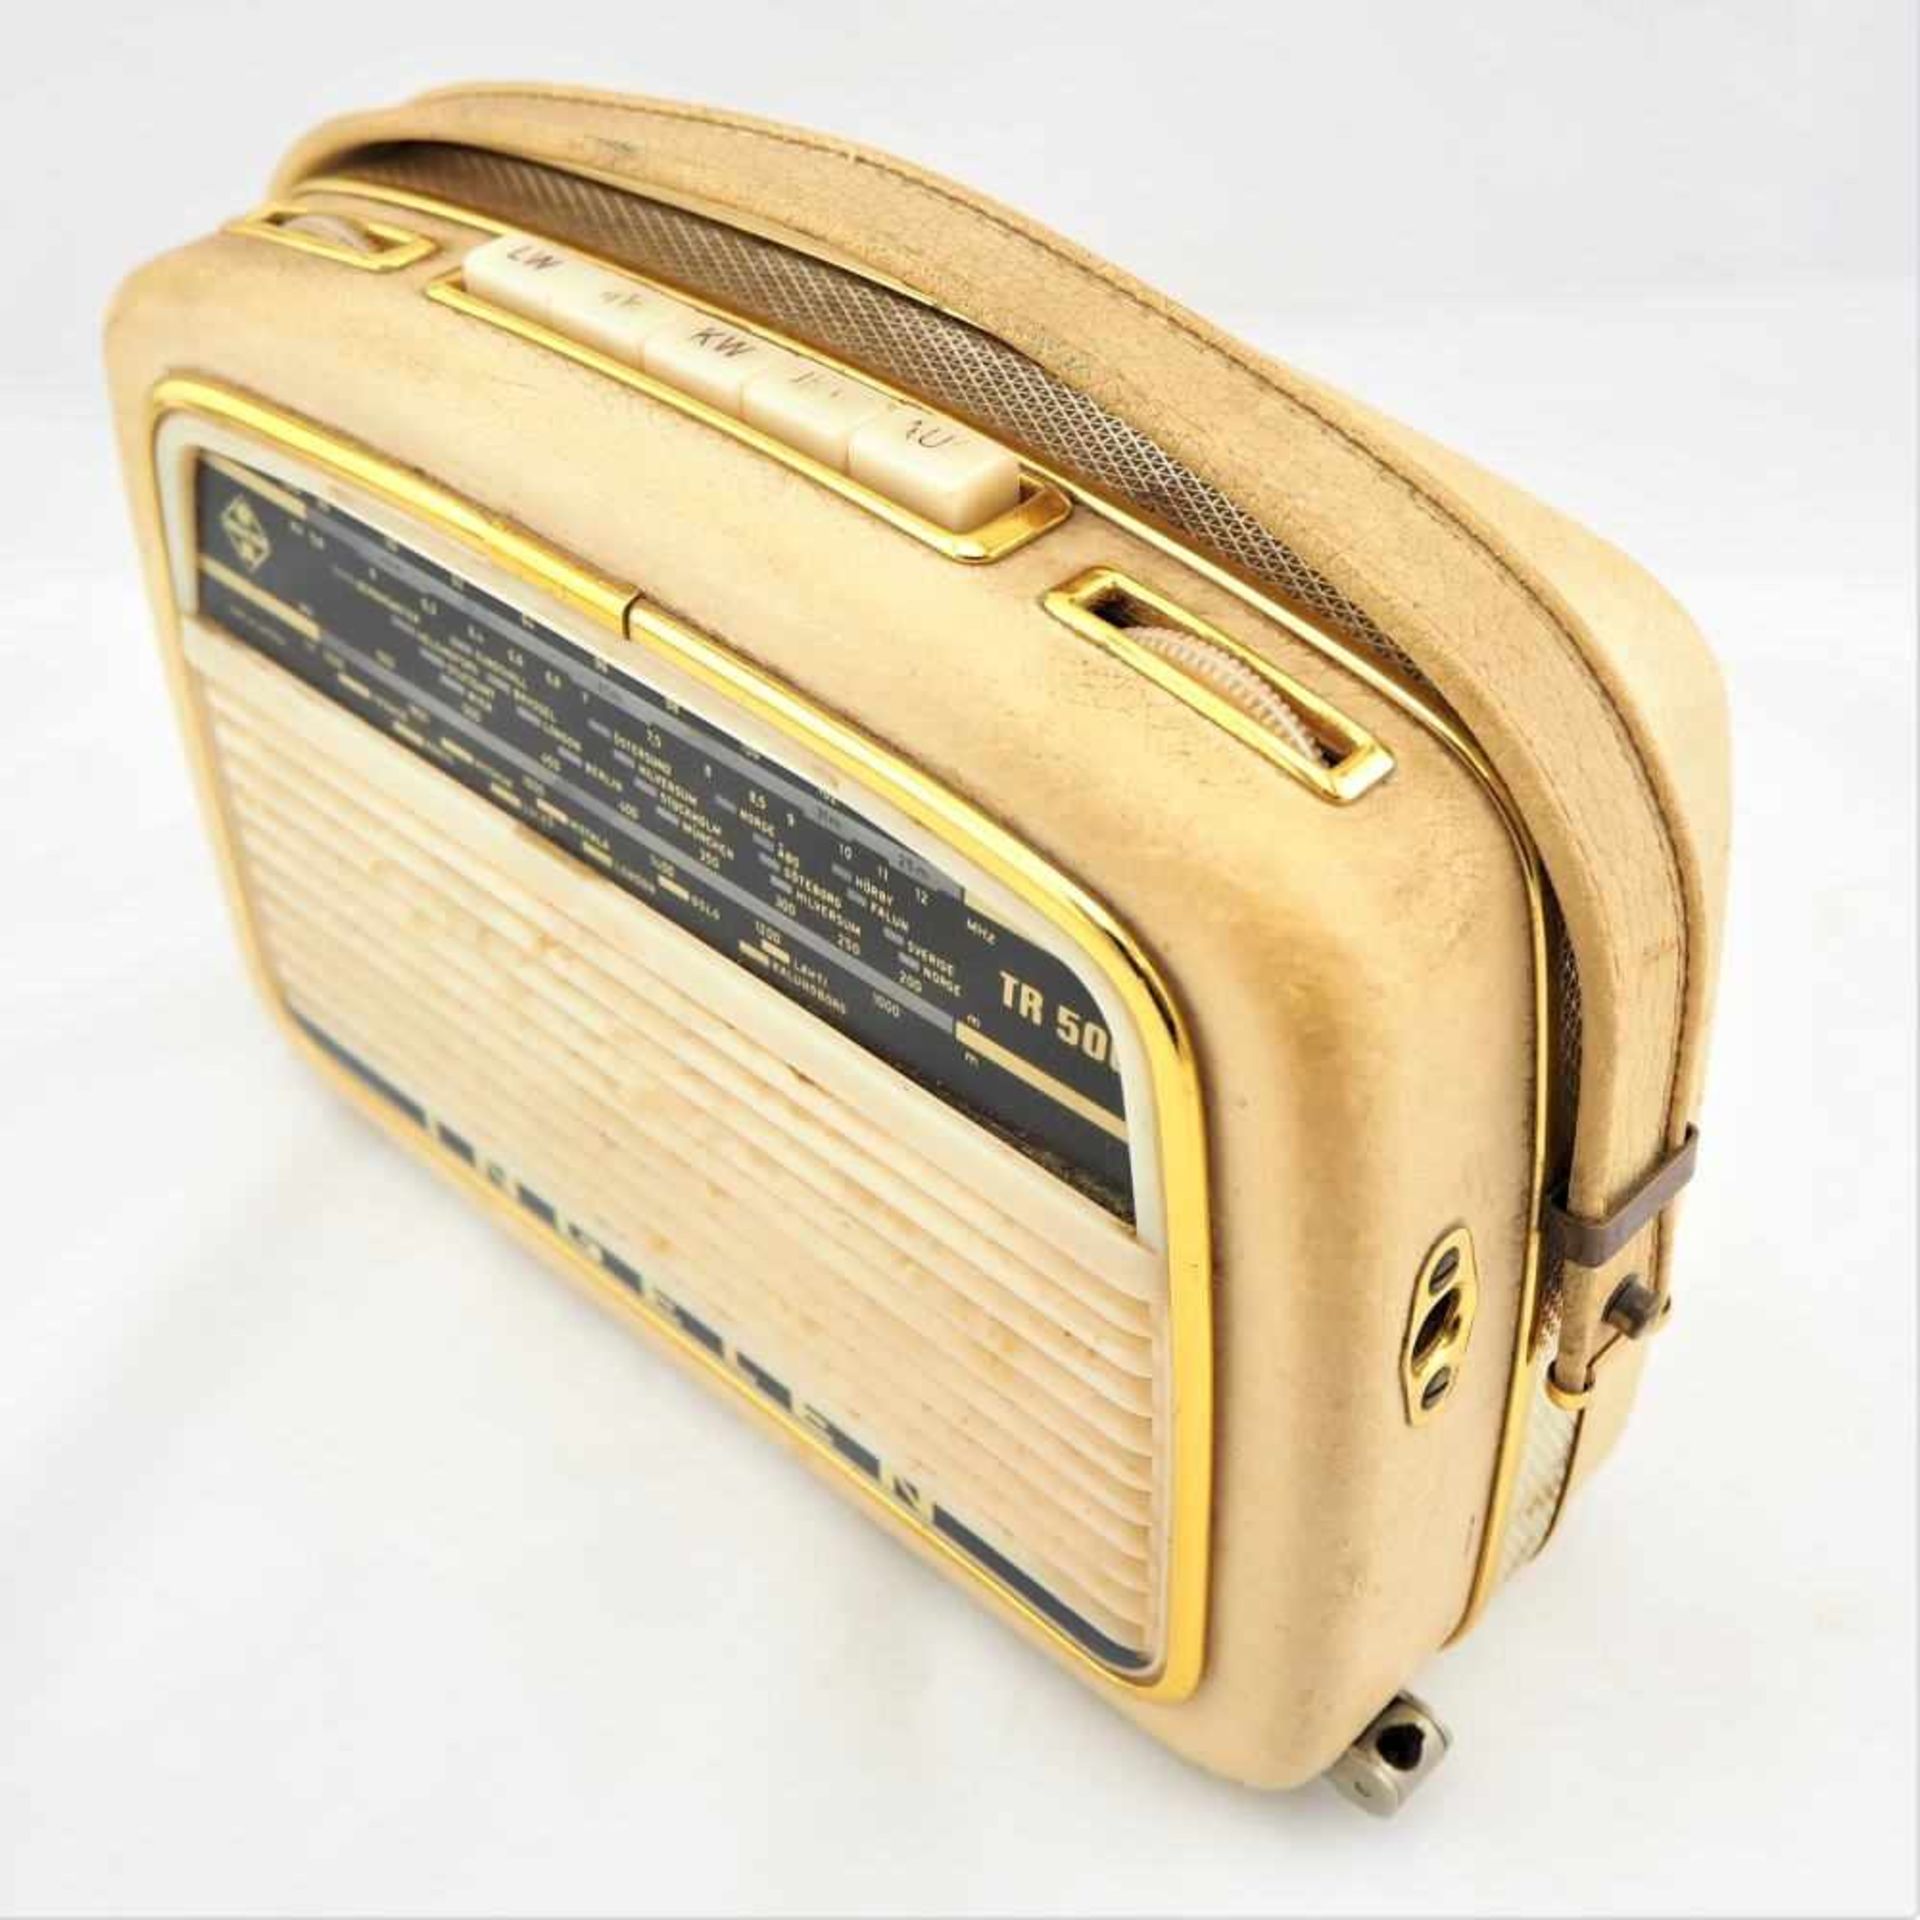 Kofferradio, 50er JahreTragbares Kofferradio der Marke "Ingelen", Typ TR. 500. Stabiles Gehäuse - Bild 2 aus 2